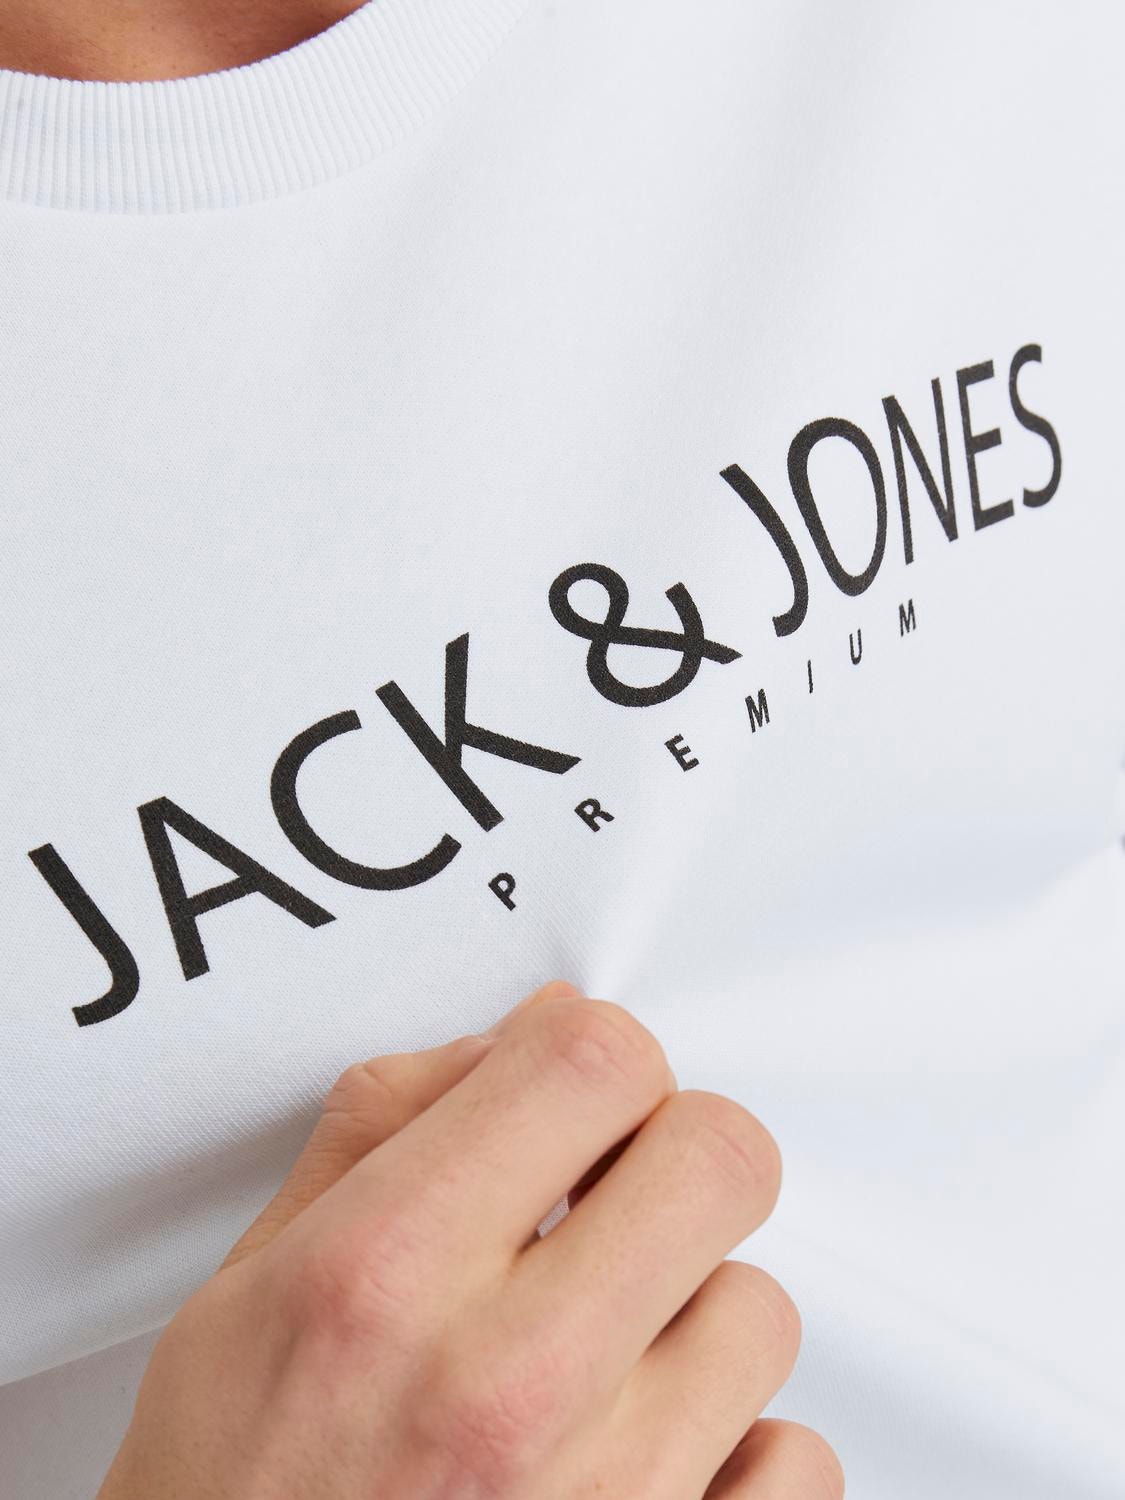 Jack & Jones Tryck Crewneck tröja -Bright White - 12256972